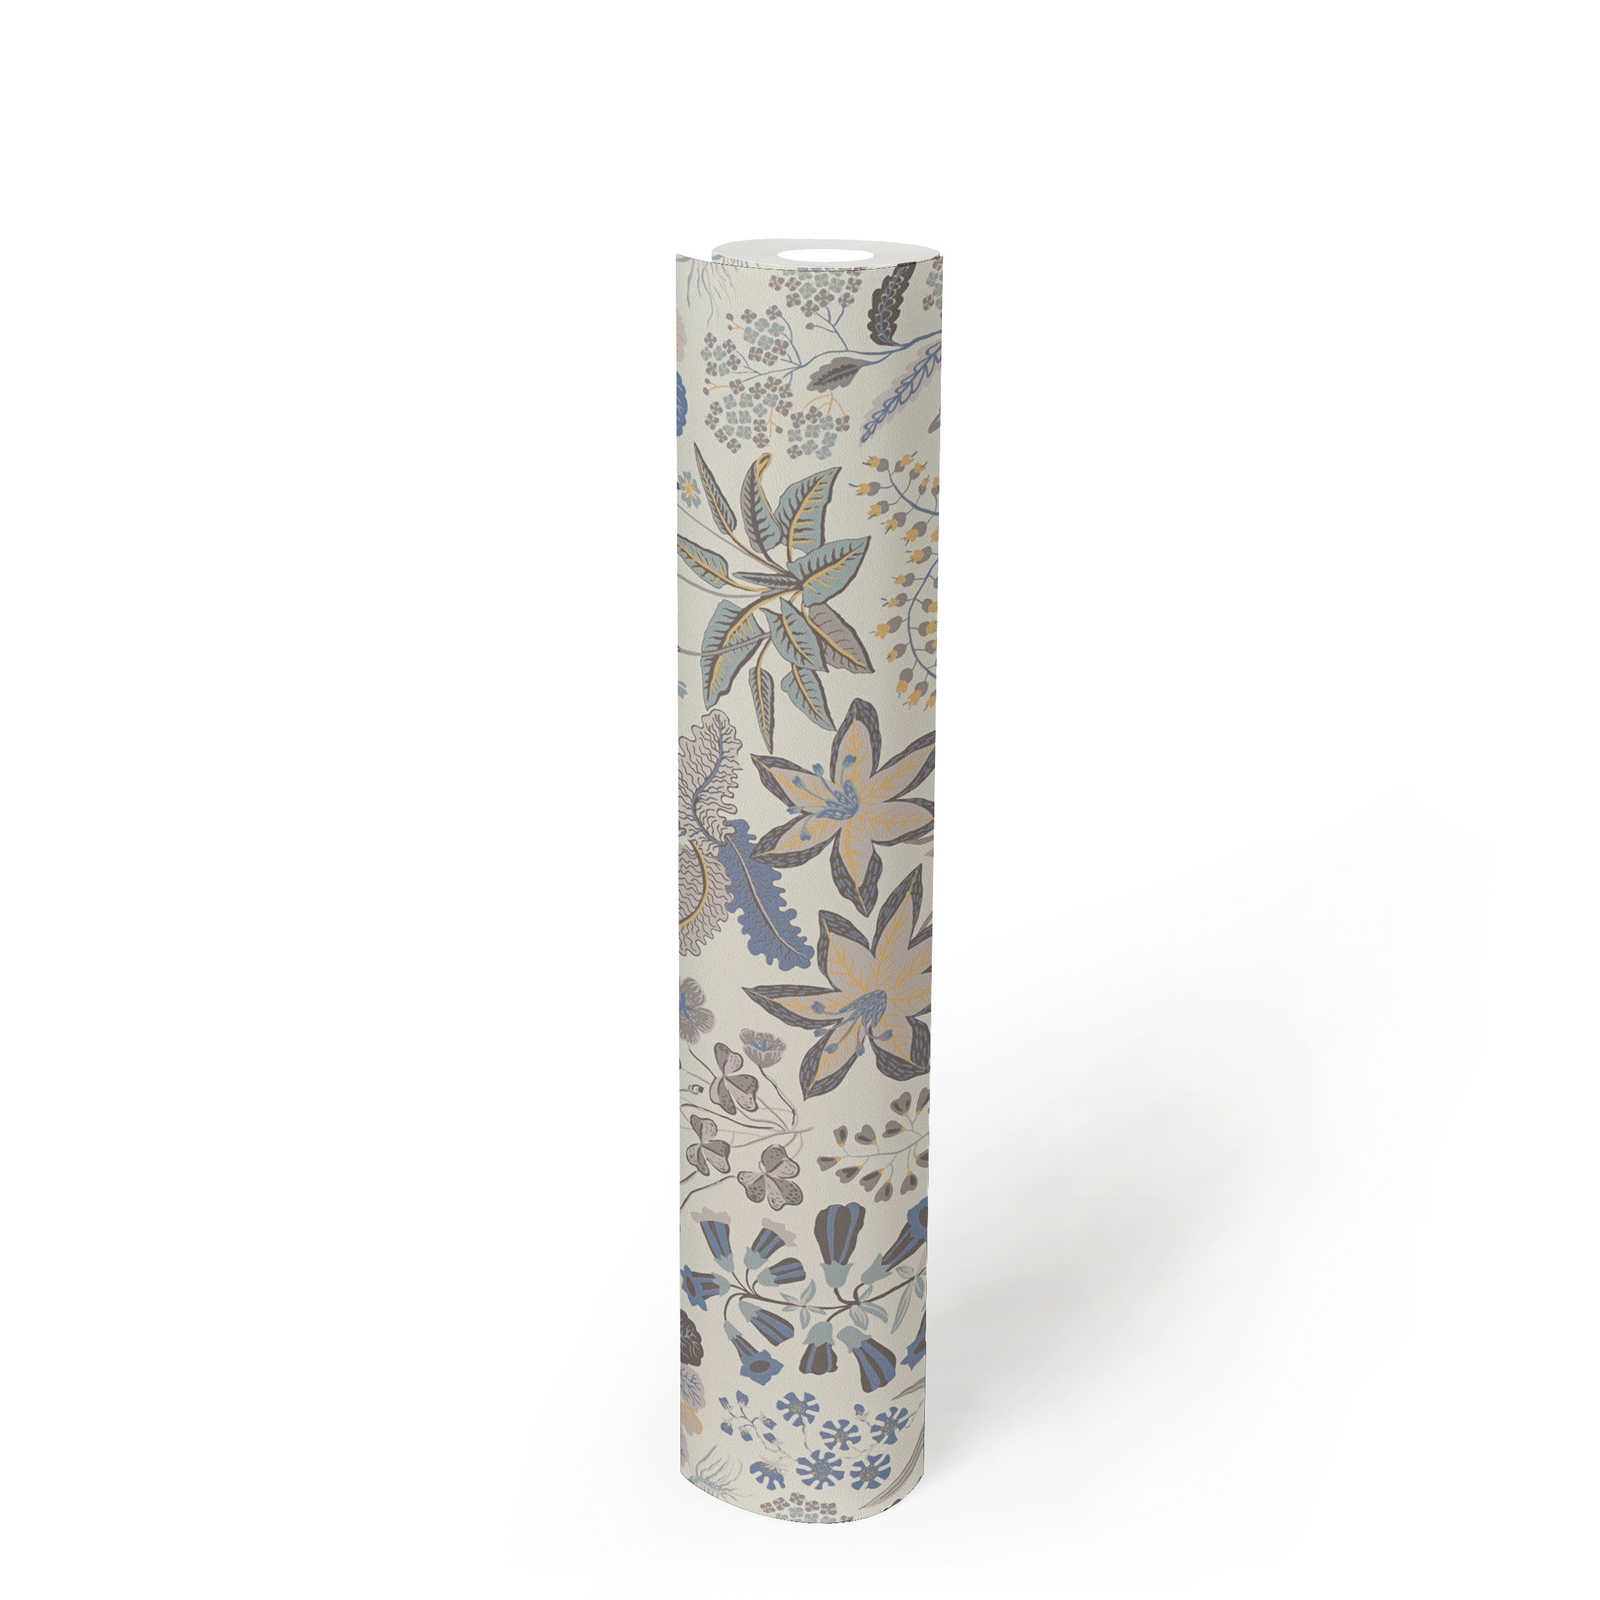             Papier peint intissé avec motifs floraux détaillés - gris, bleu, crème
        